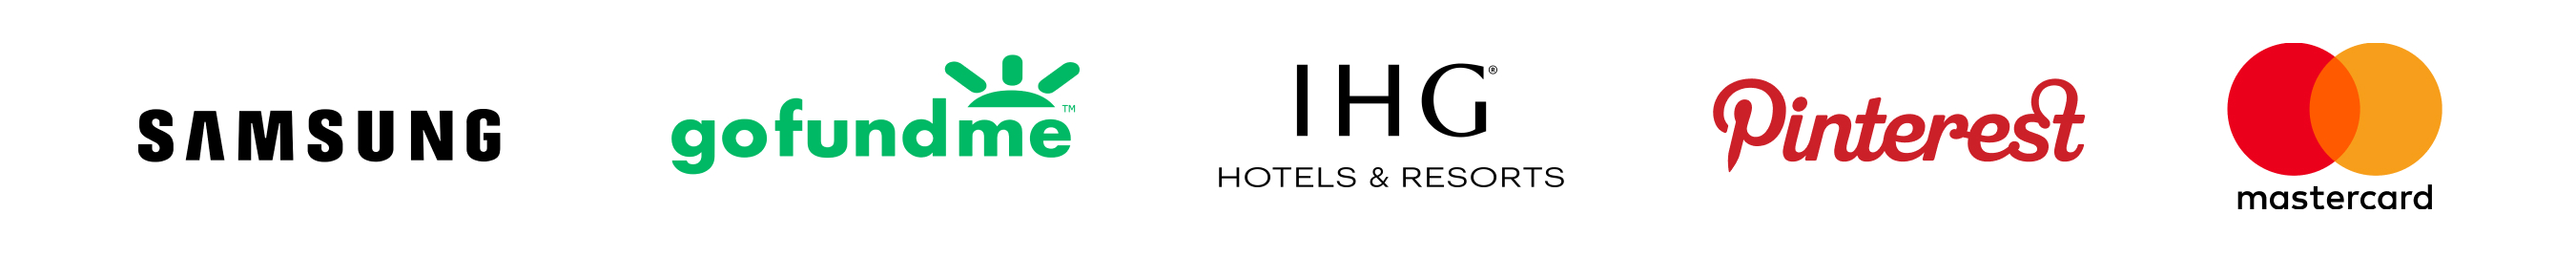 三星标志、gofundme 标志、IGH 酒店及度假村标志、Pintrest 标志、万事达卡标志